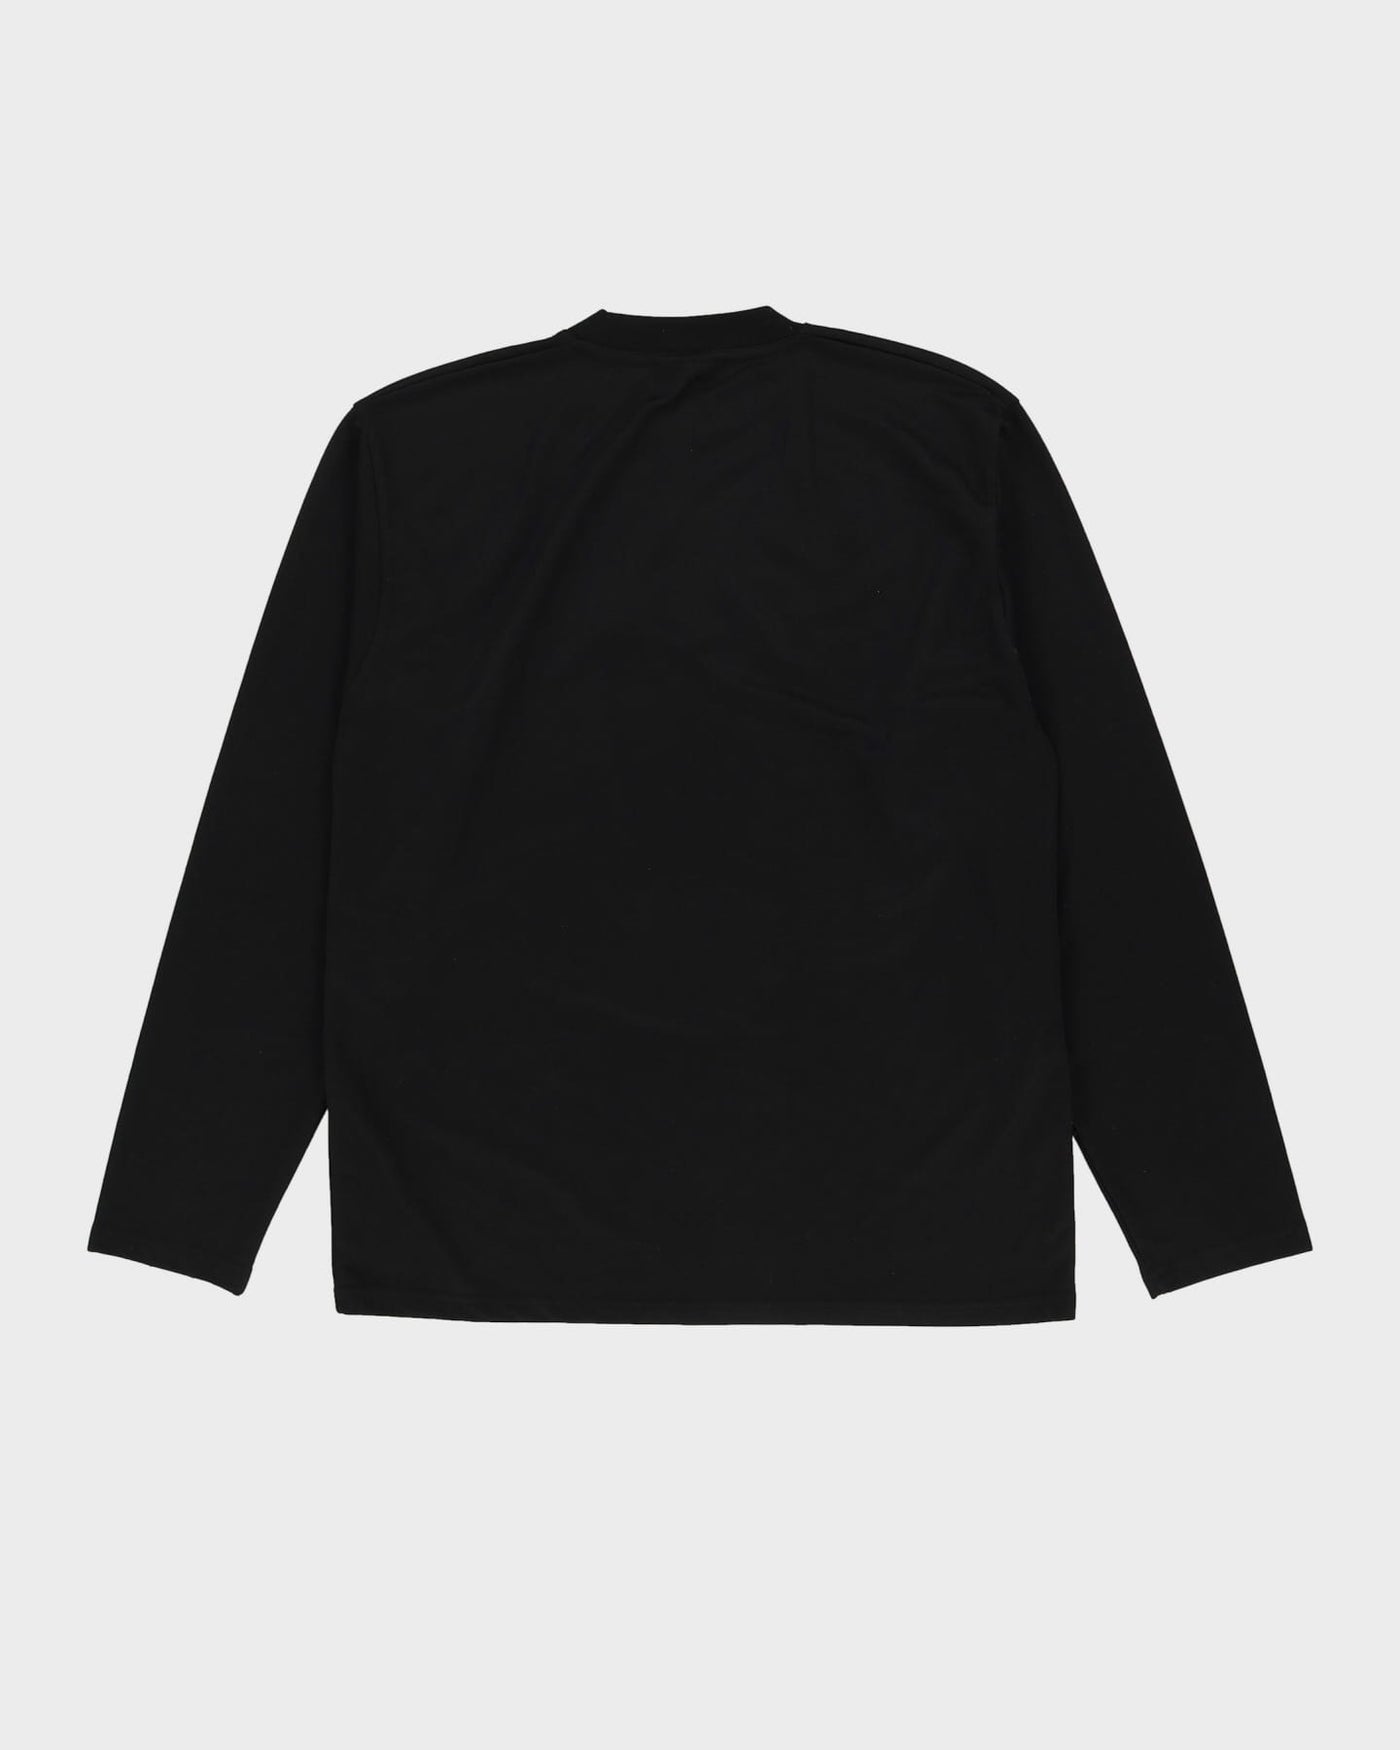 Versace Black Long Sleeve T-Shirt - L